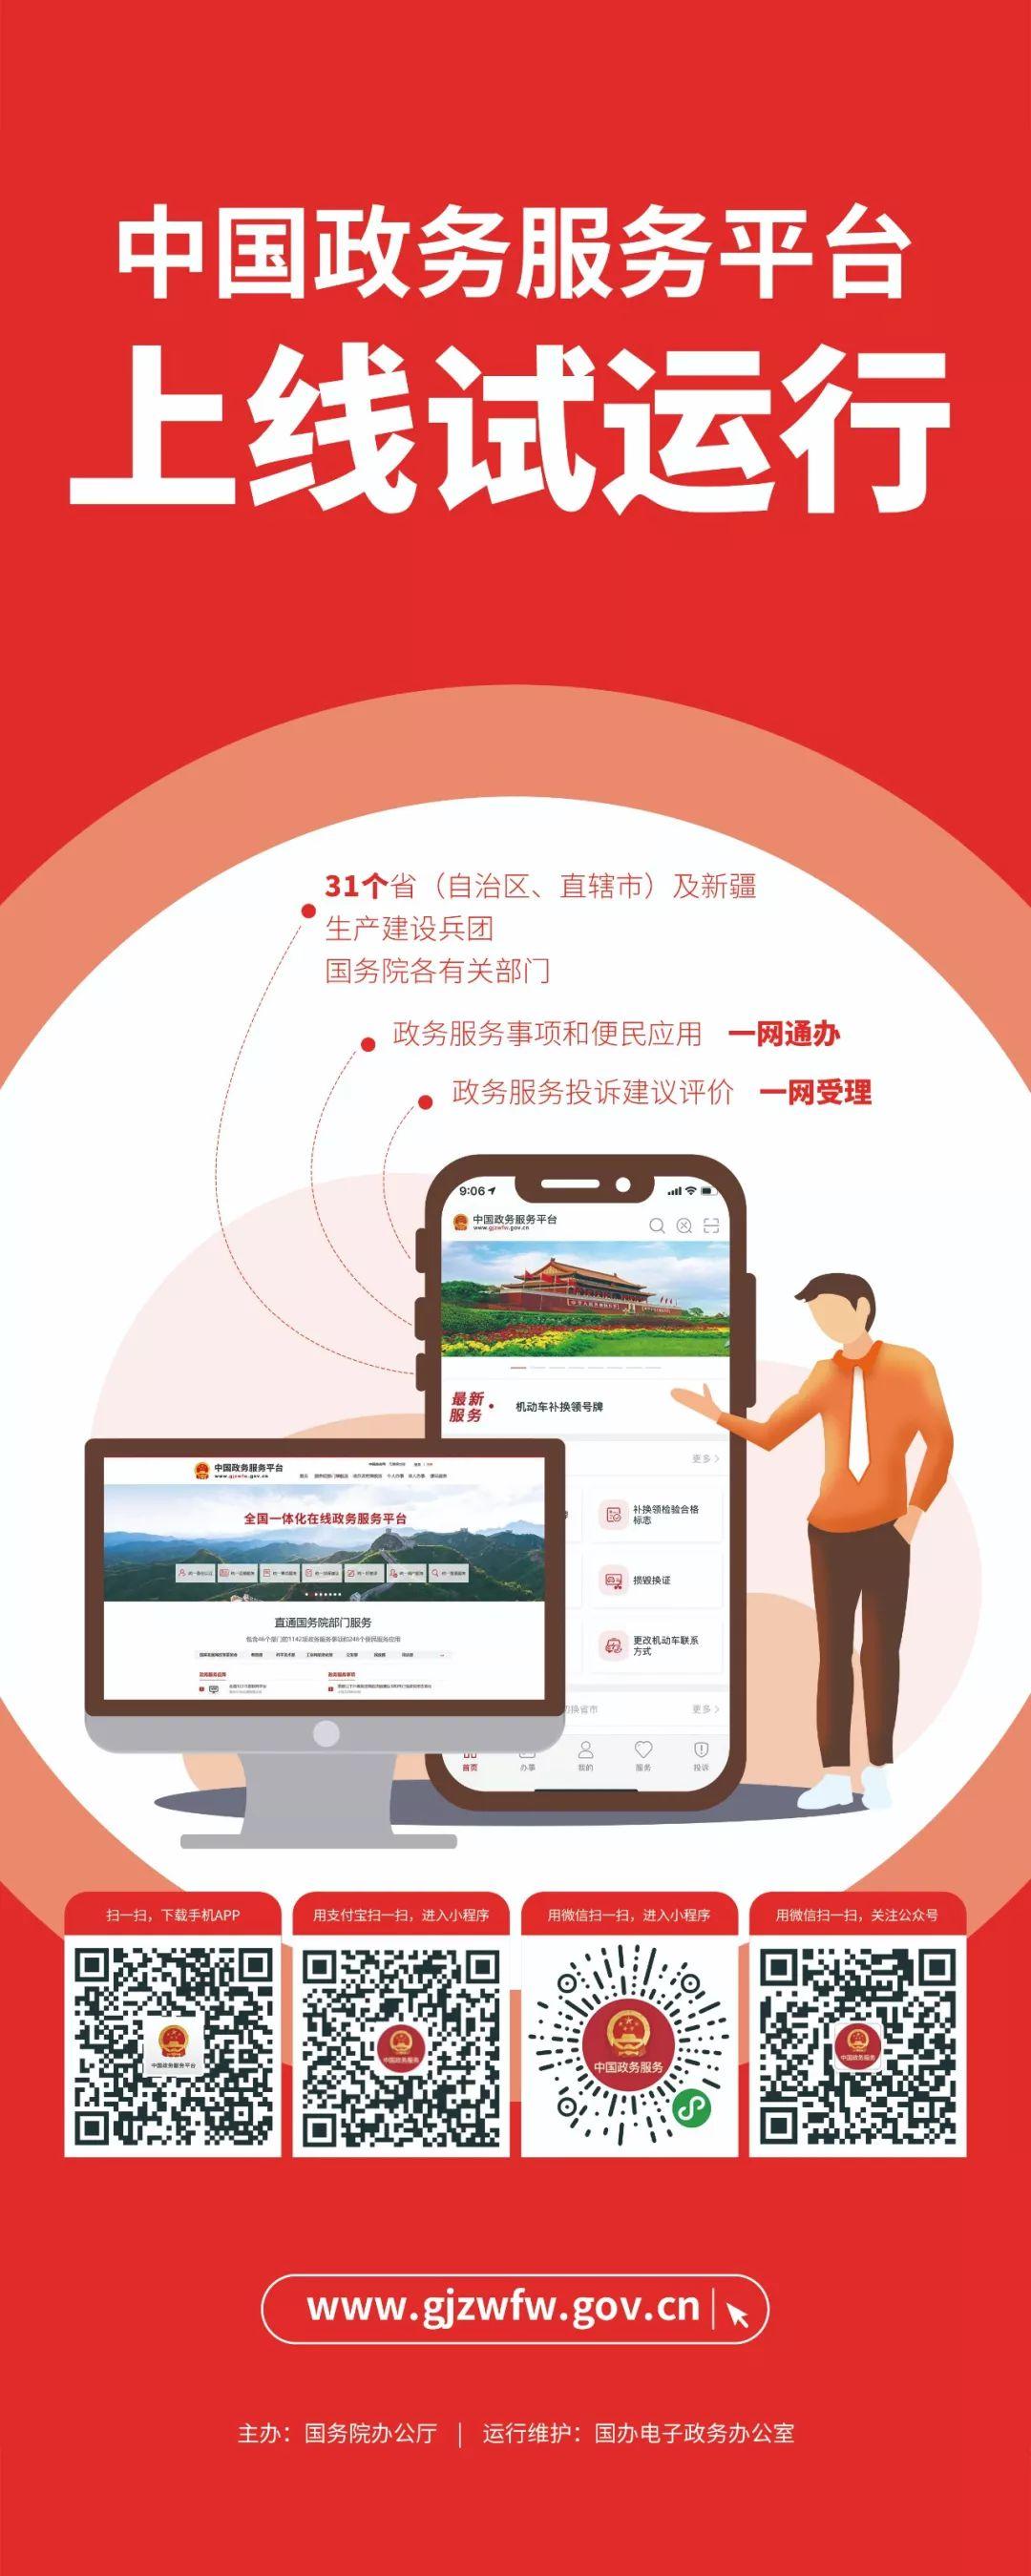 中国政务服务平台上线试运行 政务服务“国家队”来了！